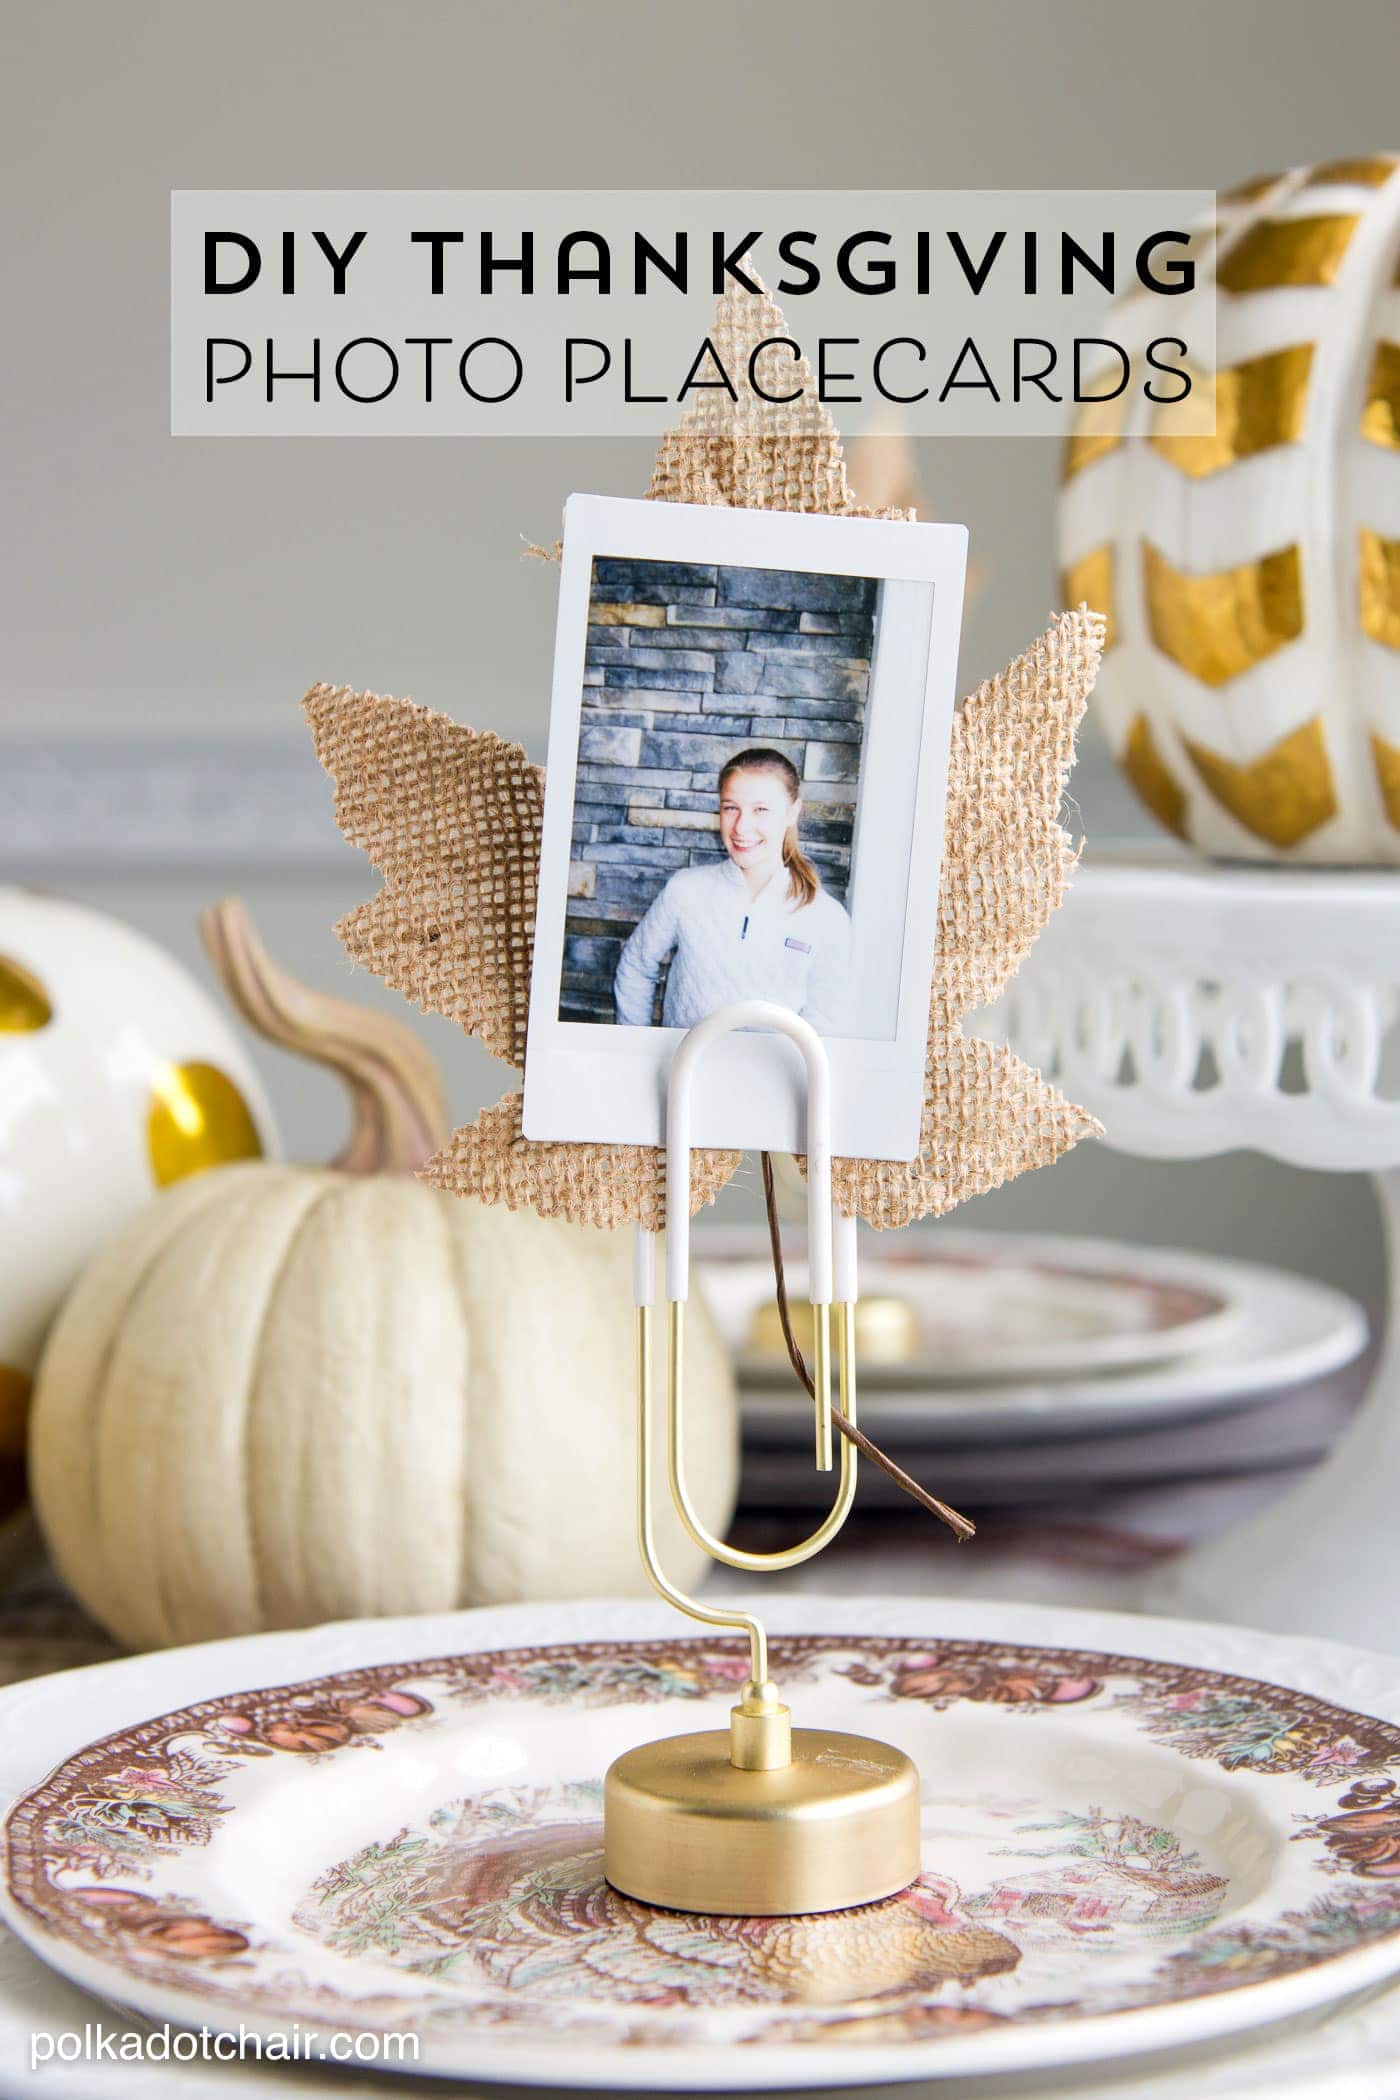 Idée mignonne pour les marque-places de Thanksgiving - Marque-places photo DIY utilisant des photos Instax